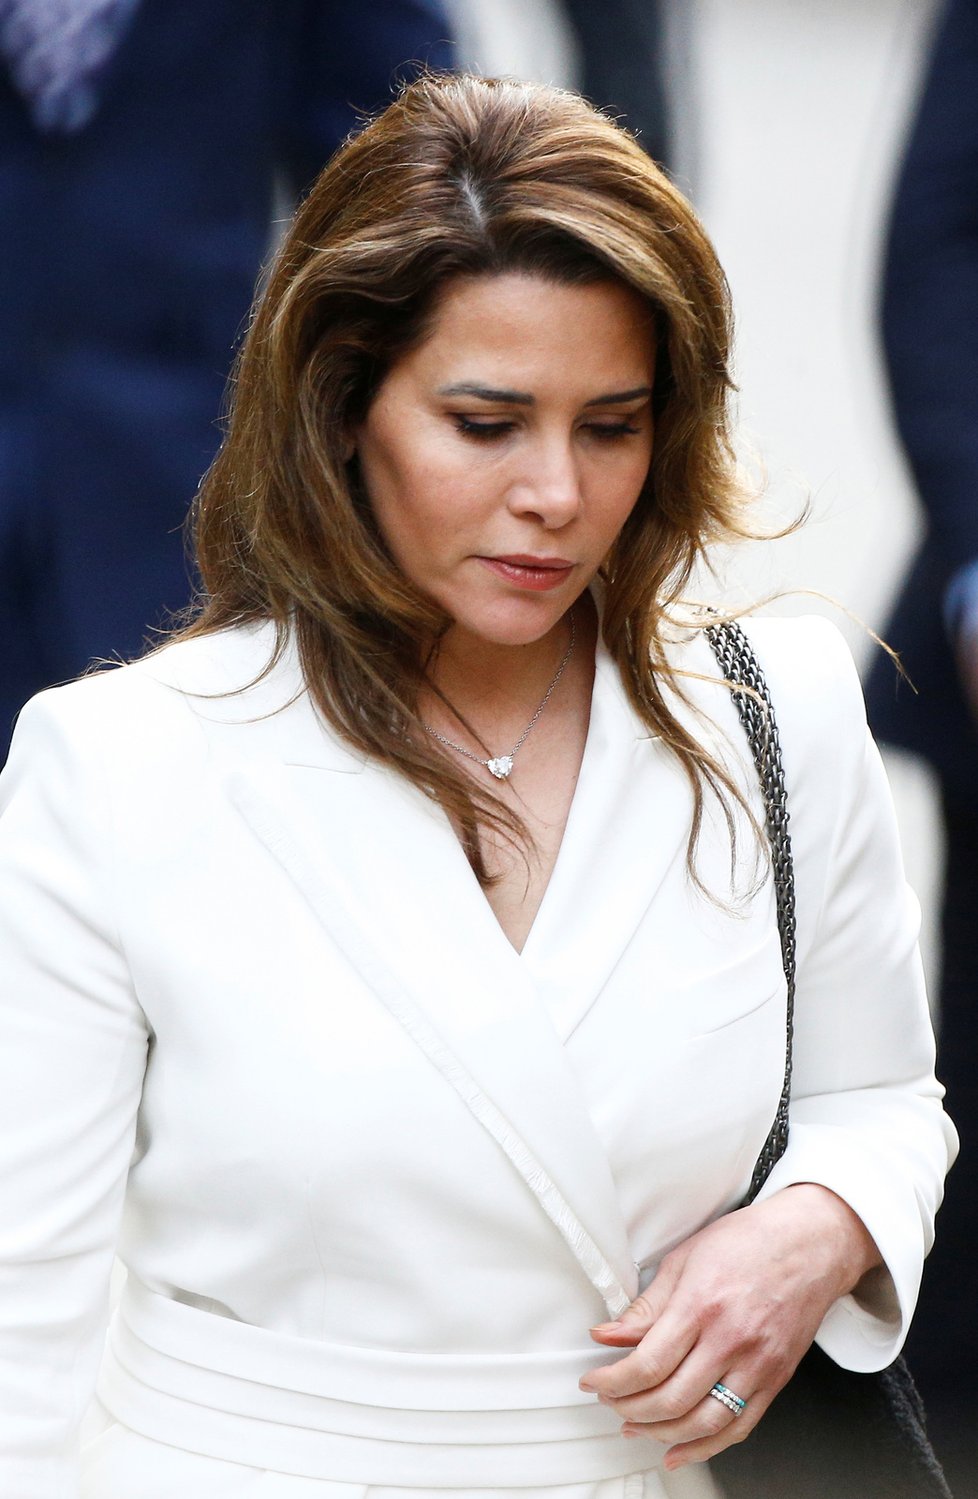 Jordánská princezna Hája bint al-Husajn u Odvolacího soudu v Londýně (26.02.2020).